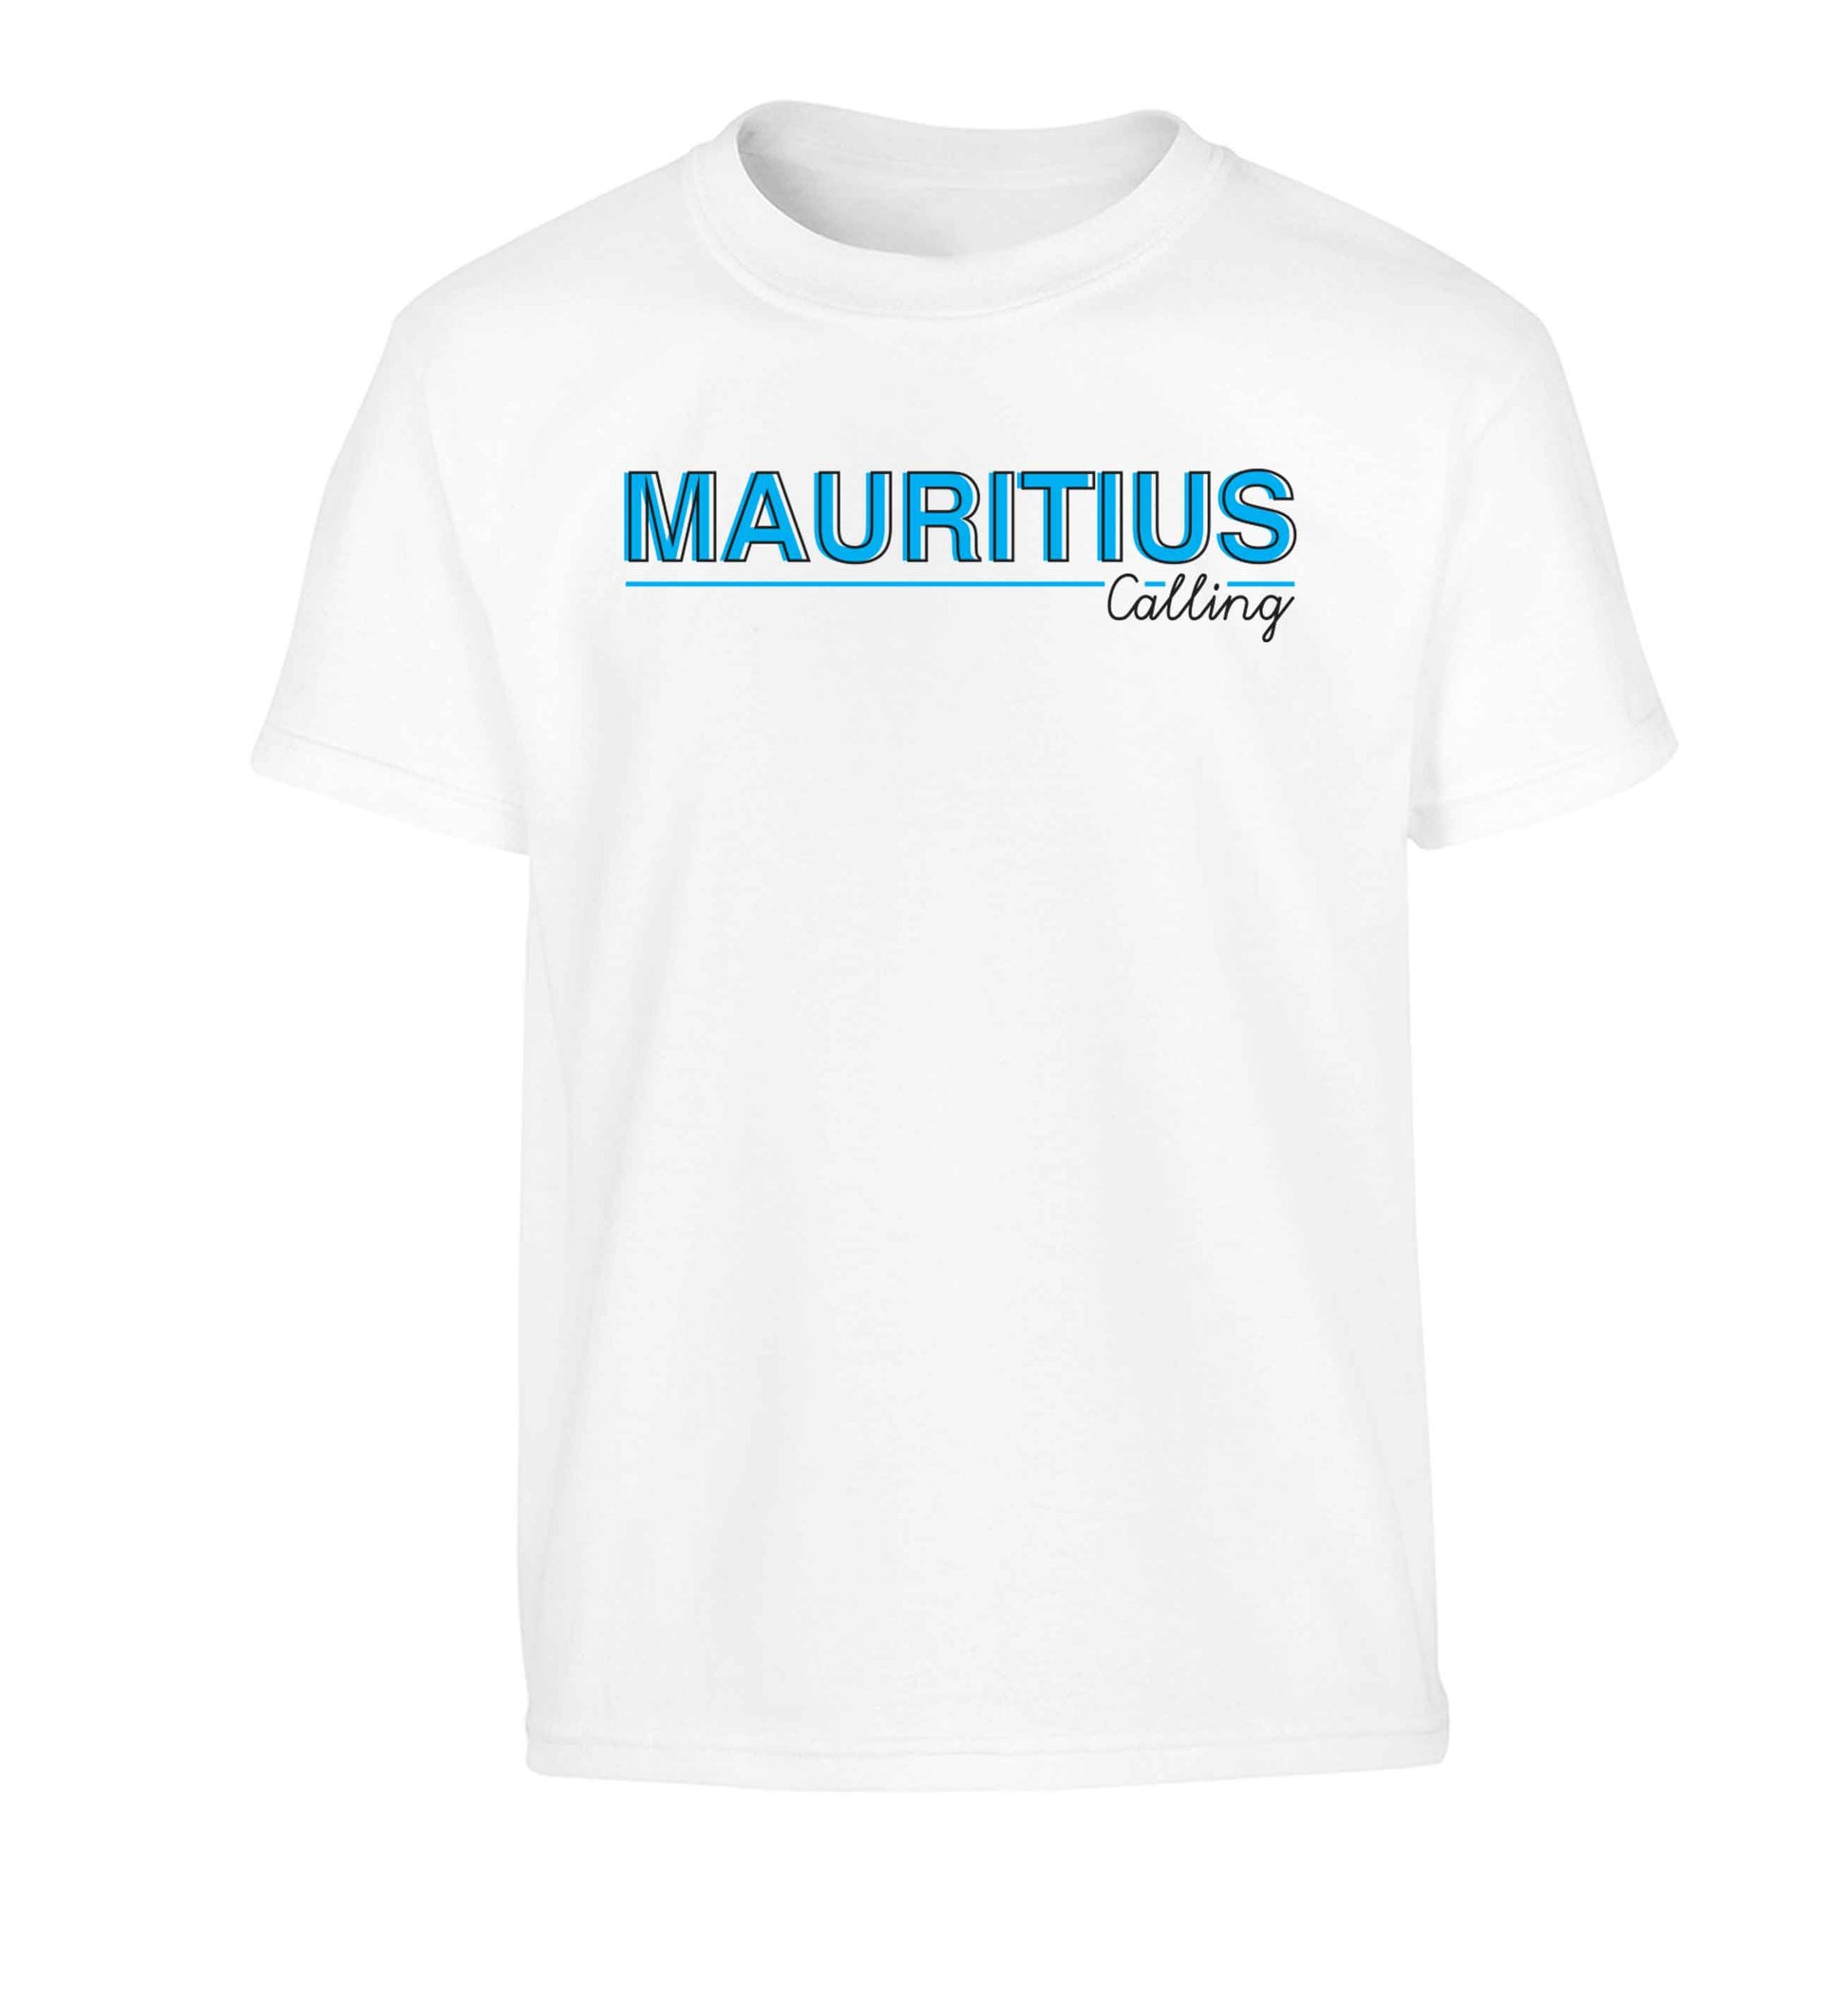 Mauritius calling Children's white Tshirt 12-13 Years